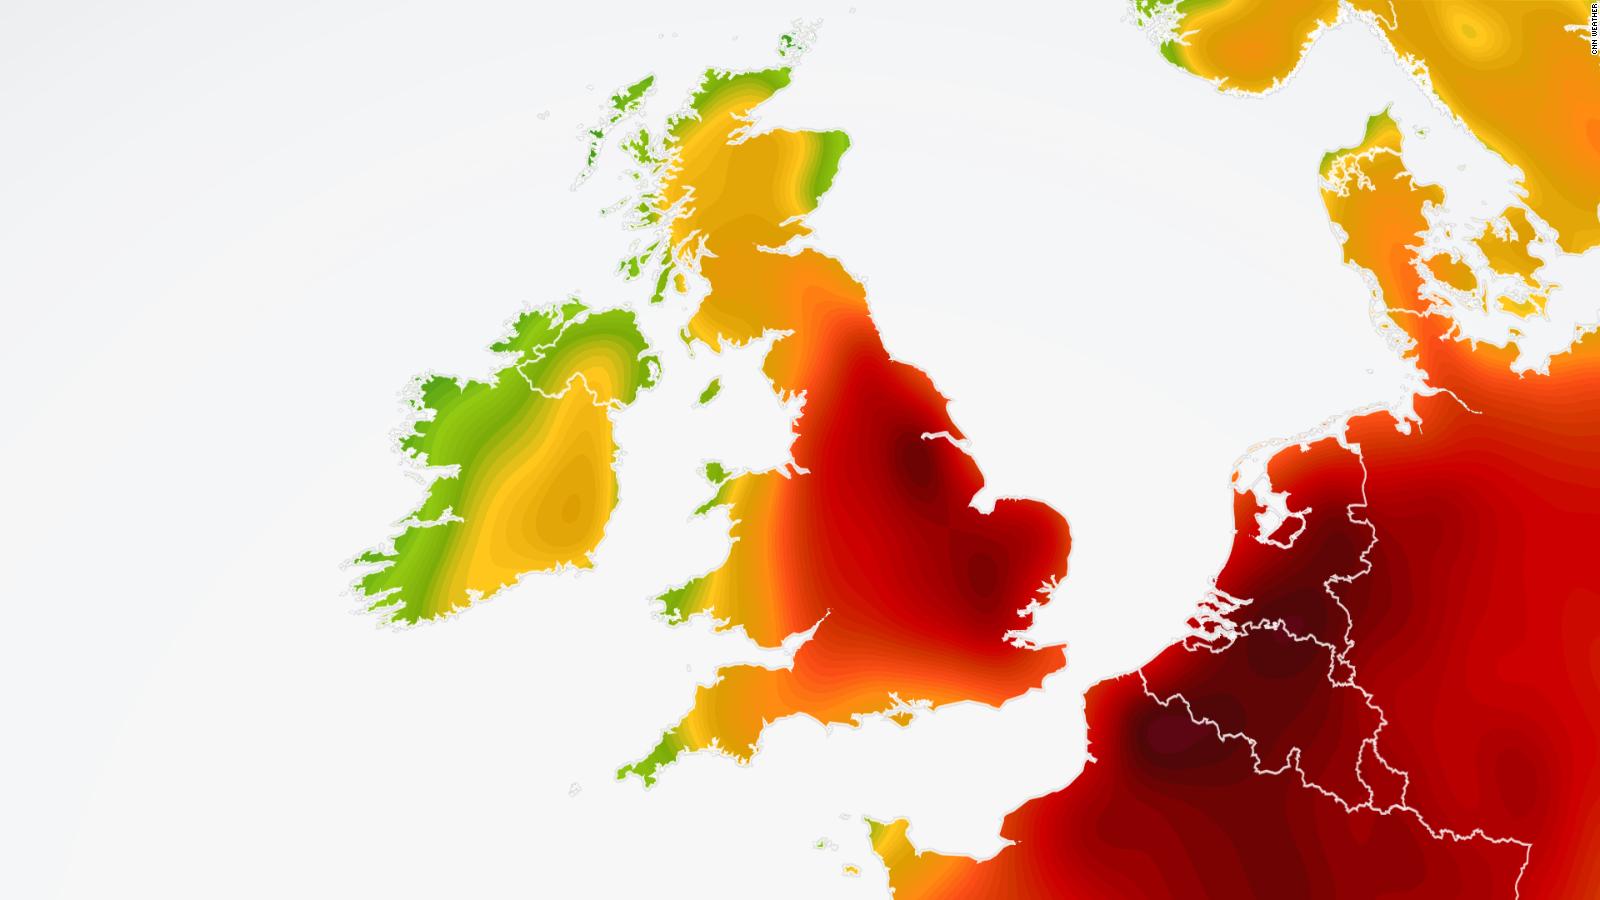 El Reino Unido alcanzará temperaturas previstas para 2050 (Análisis)